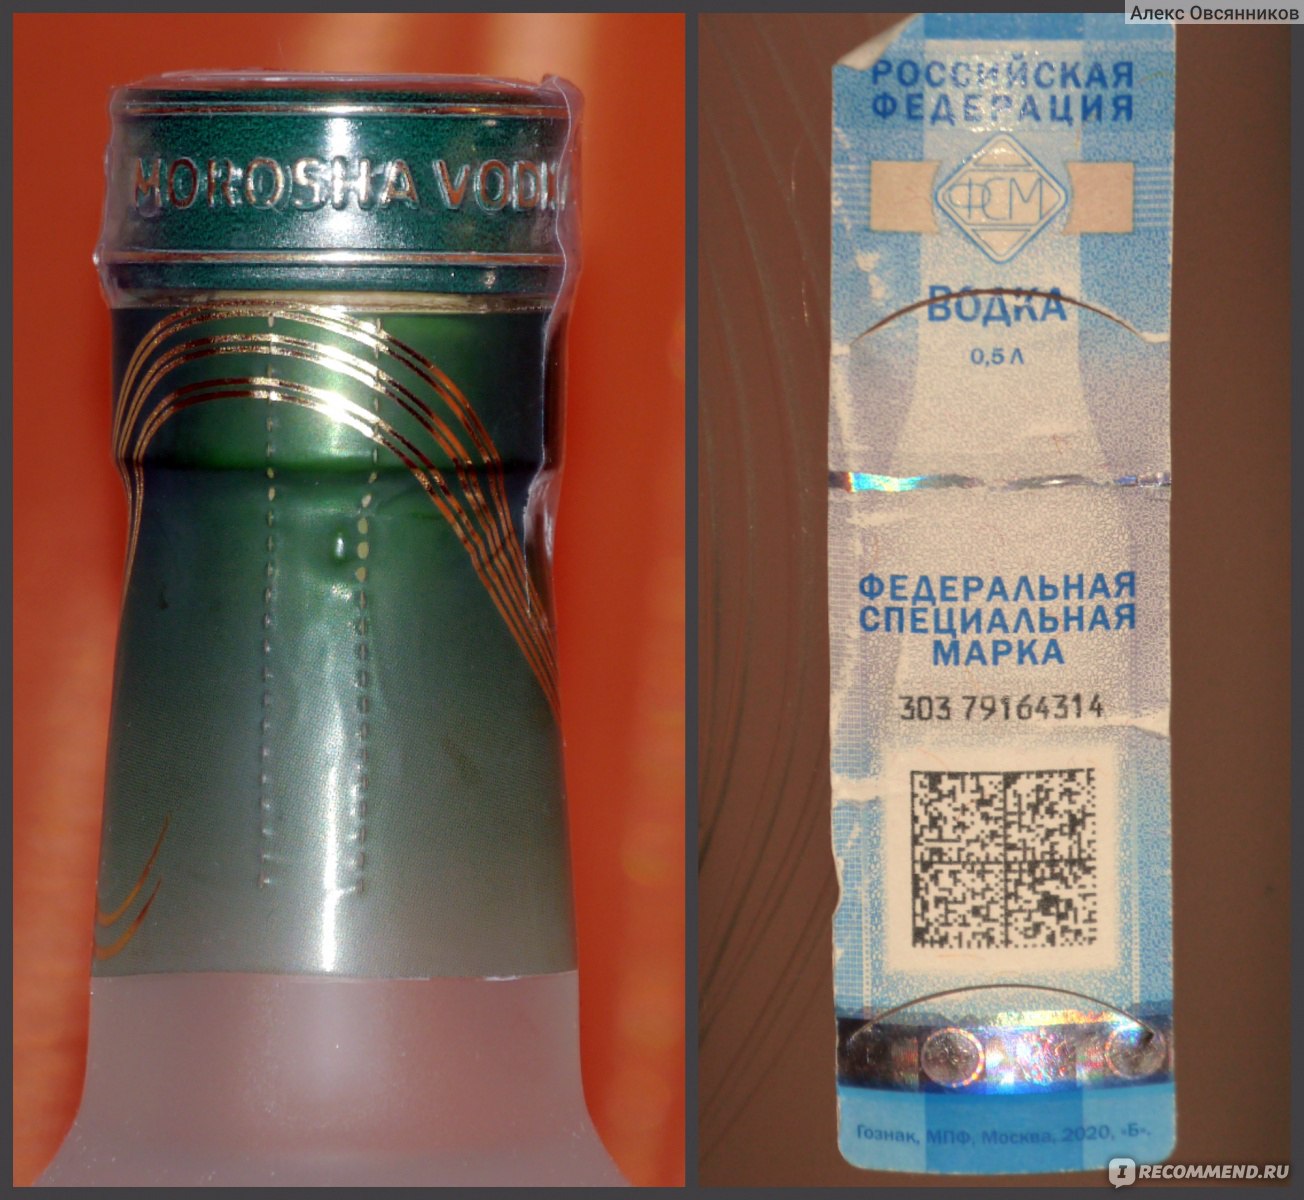 акцизная марка на алкоголь в казахстане